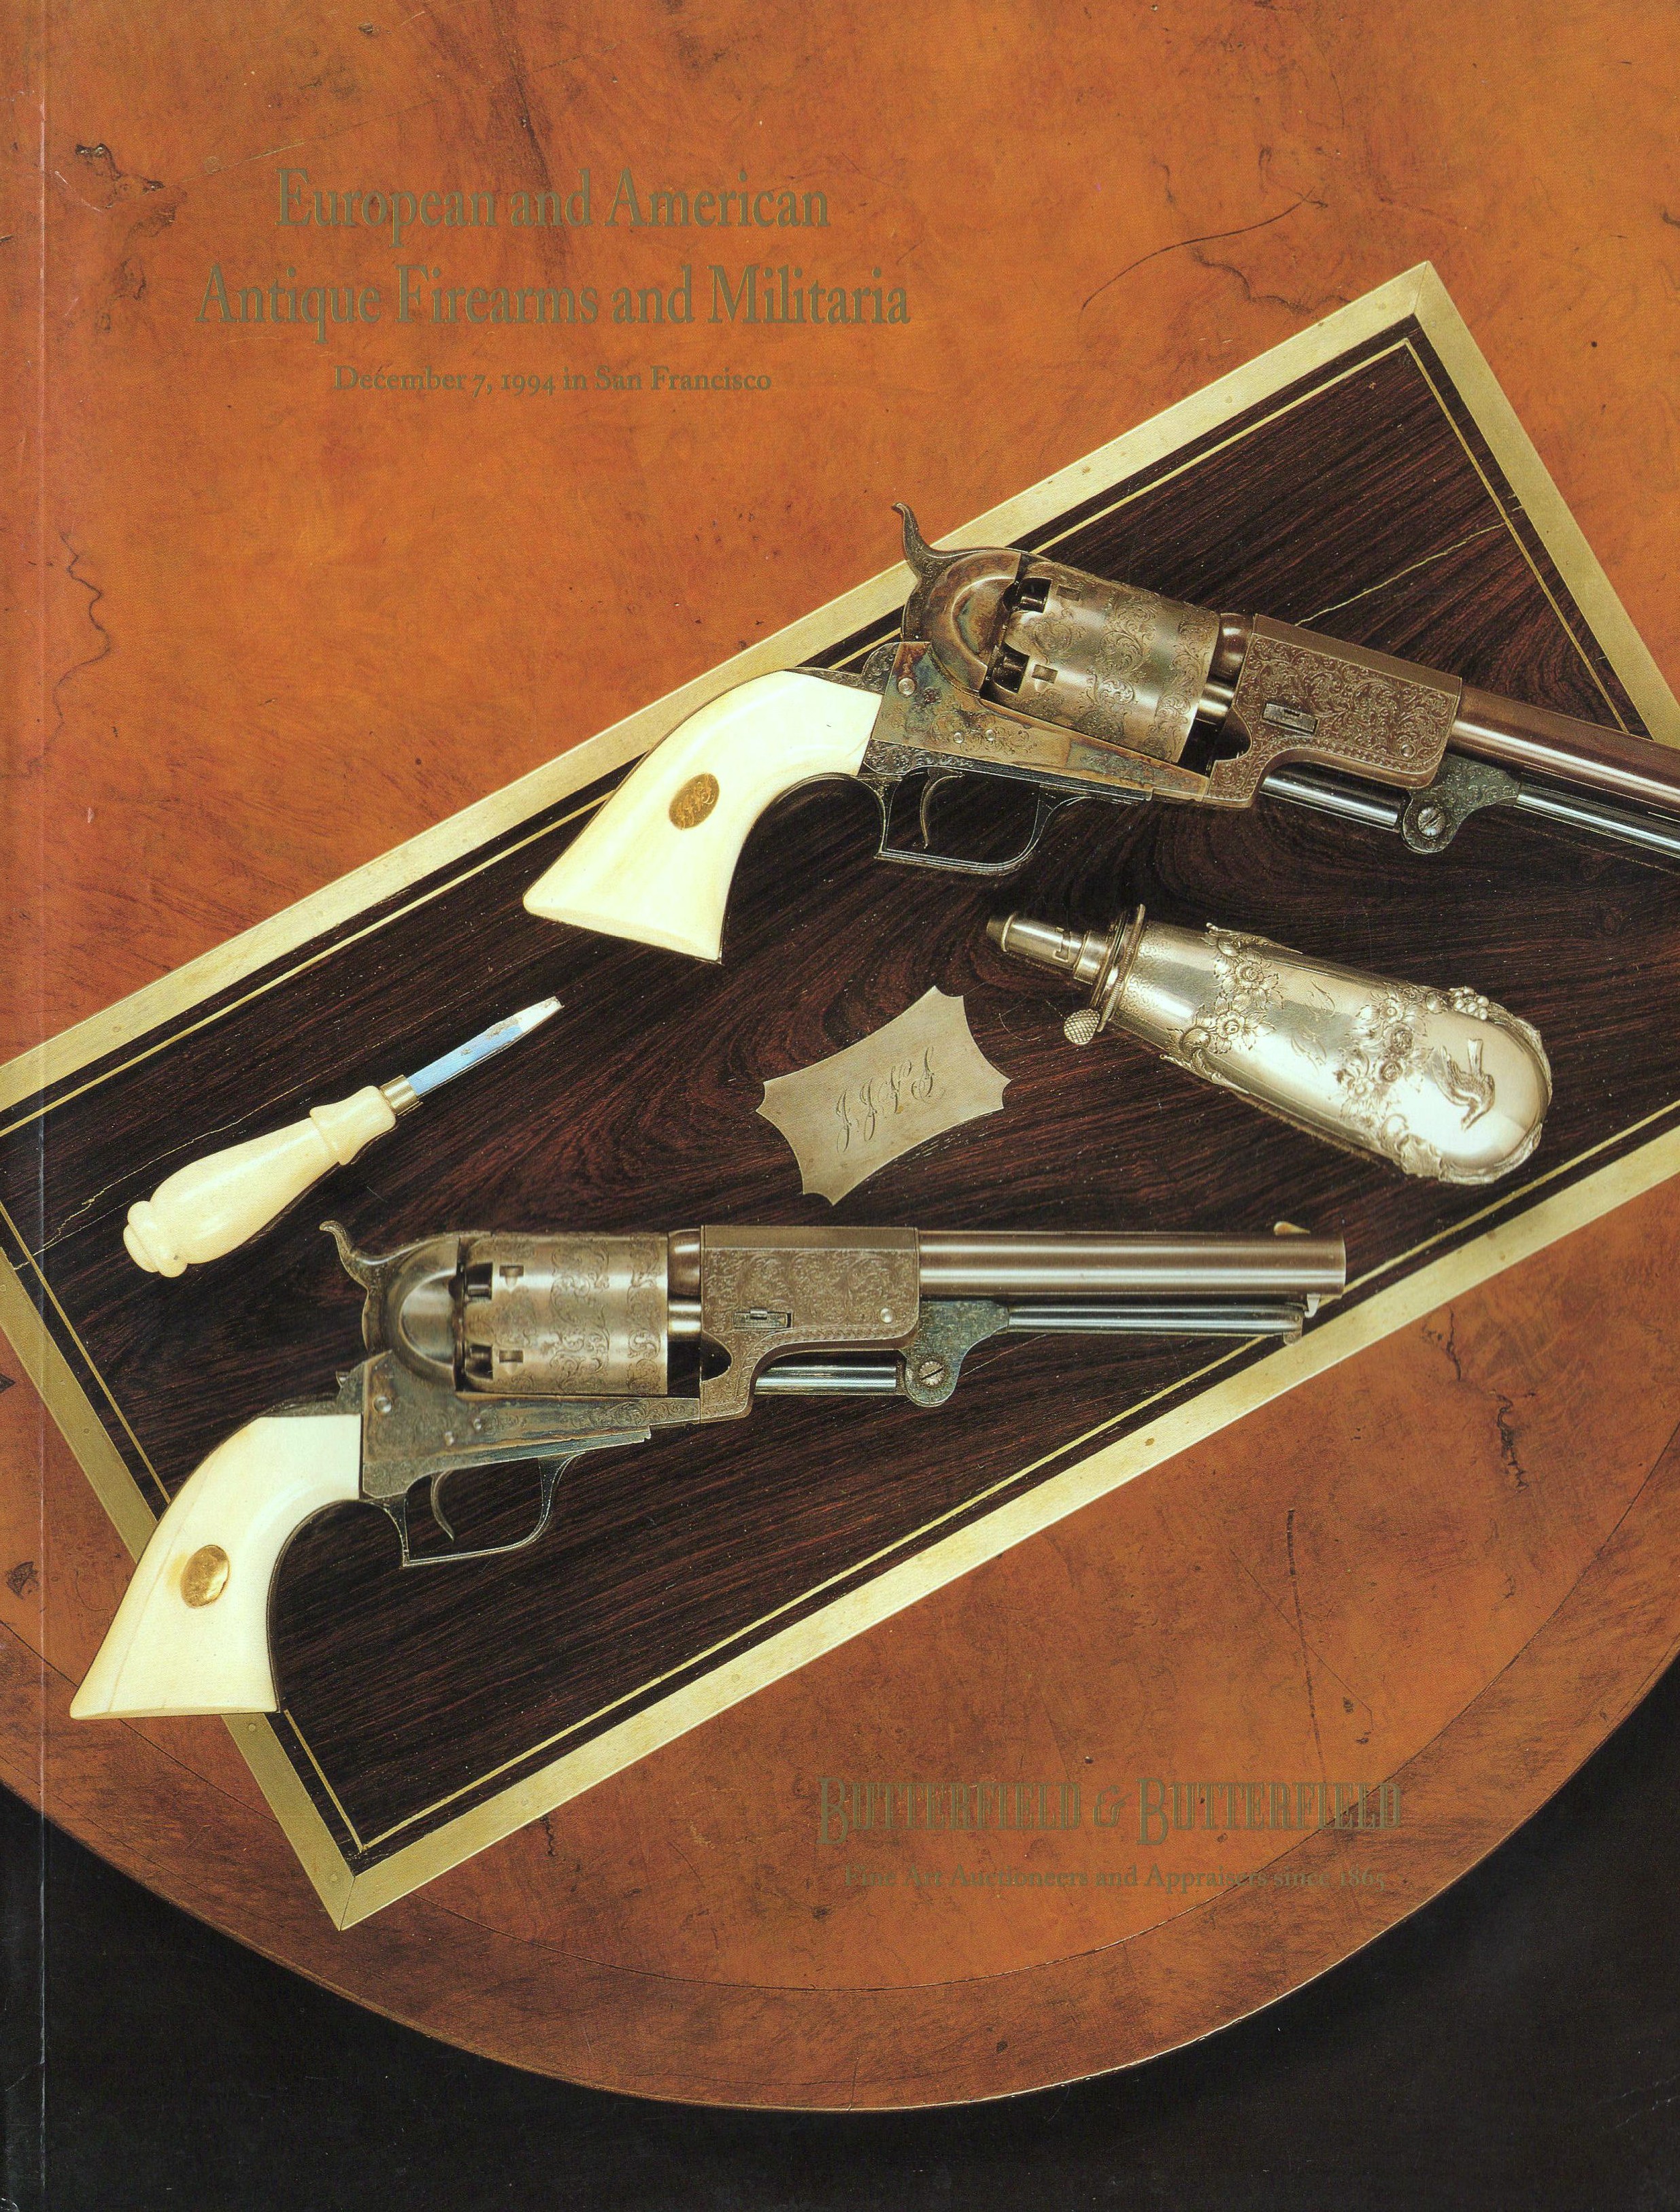 Butterfield & Butterfield December 1994 European & American, Antique Firearms an